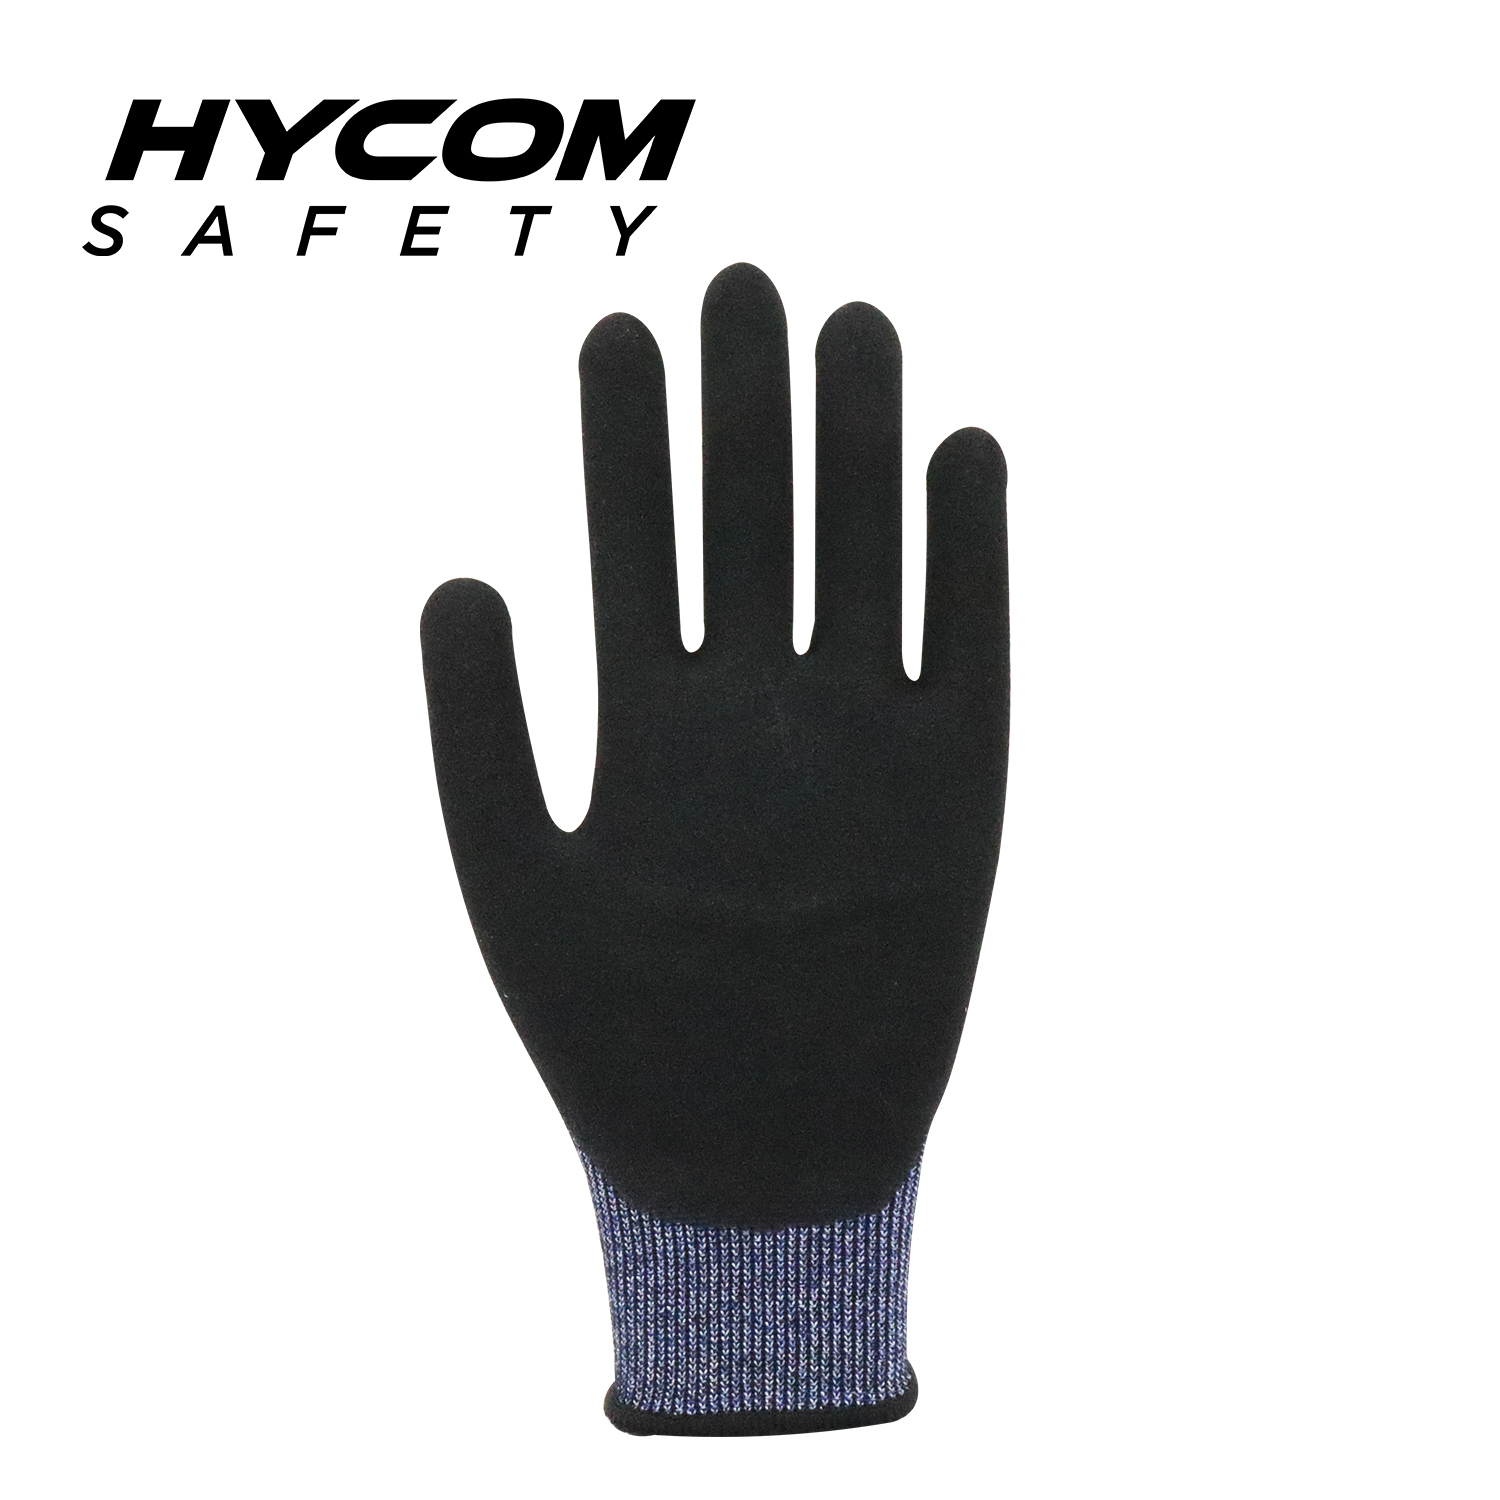 HYCOM 18G ANSI 7 Schnittfester Handschuh mit Nitril-Schaumstoffbeschichtung auf der Handfläche PSA-Handschuhe